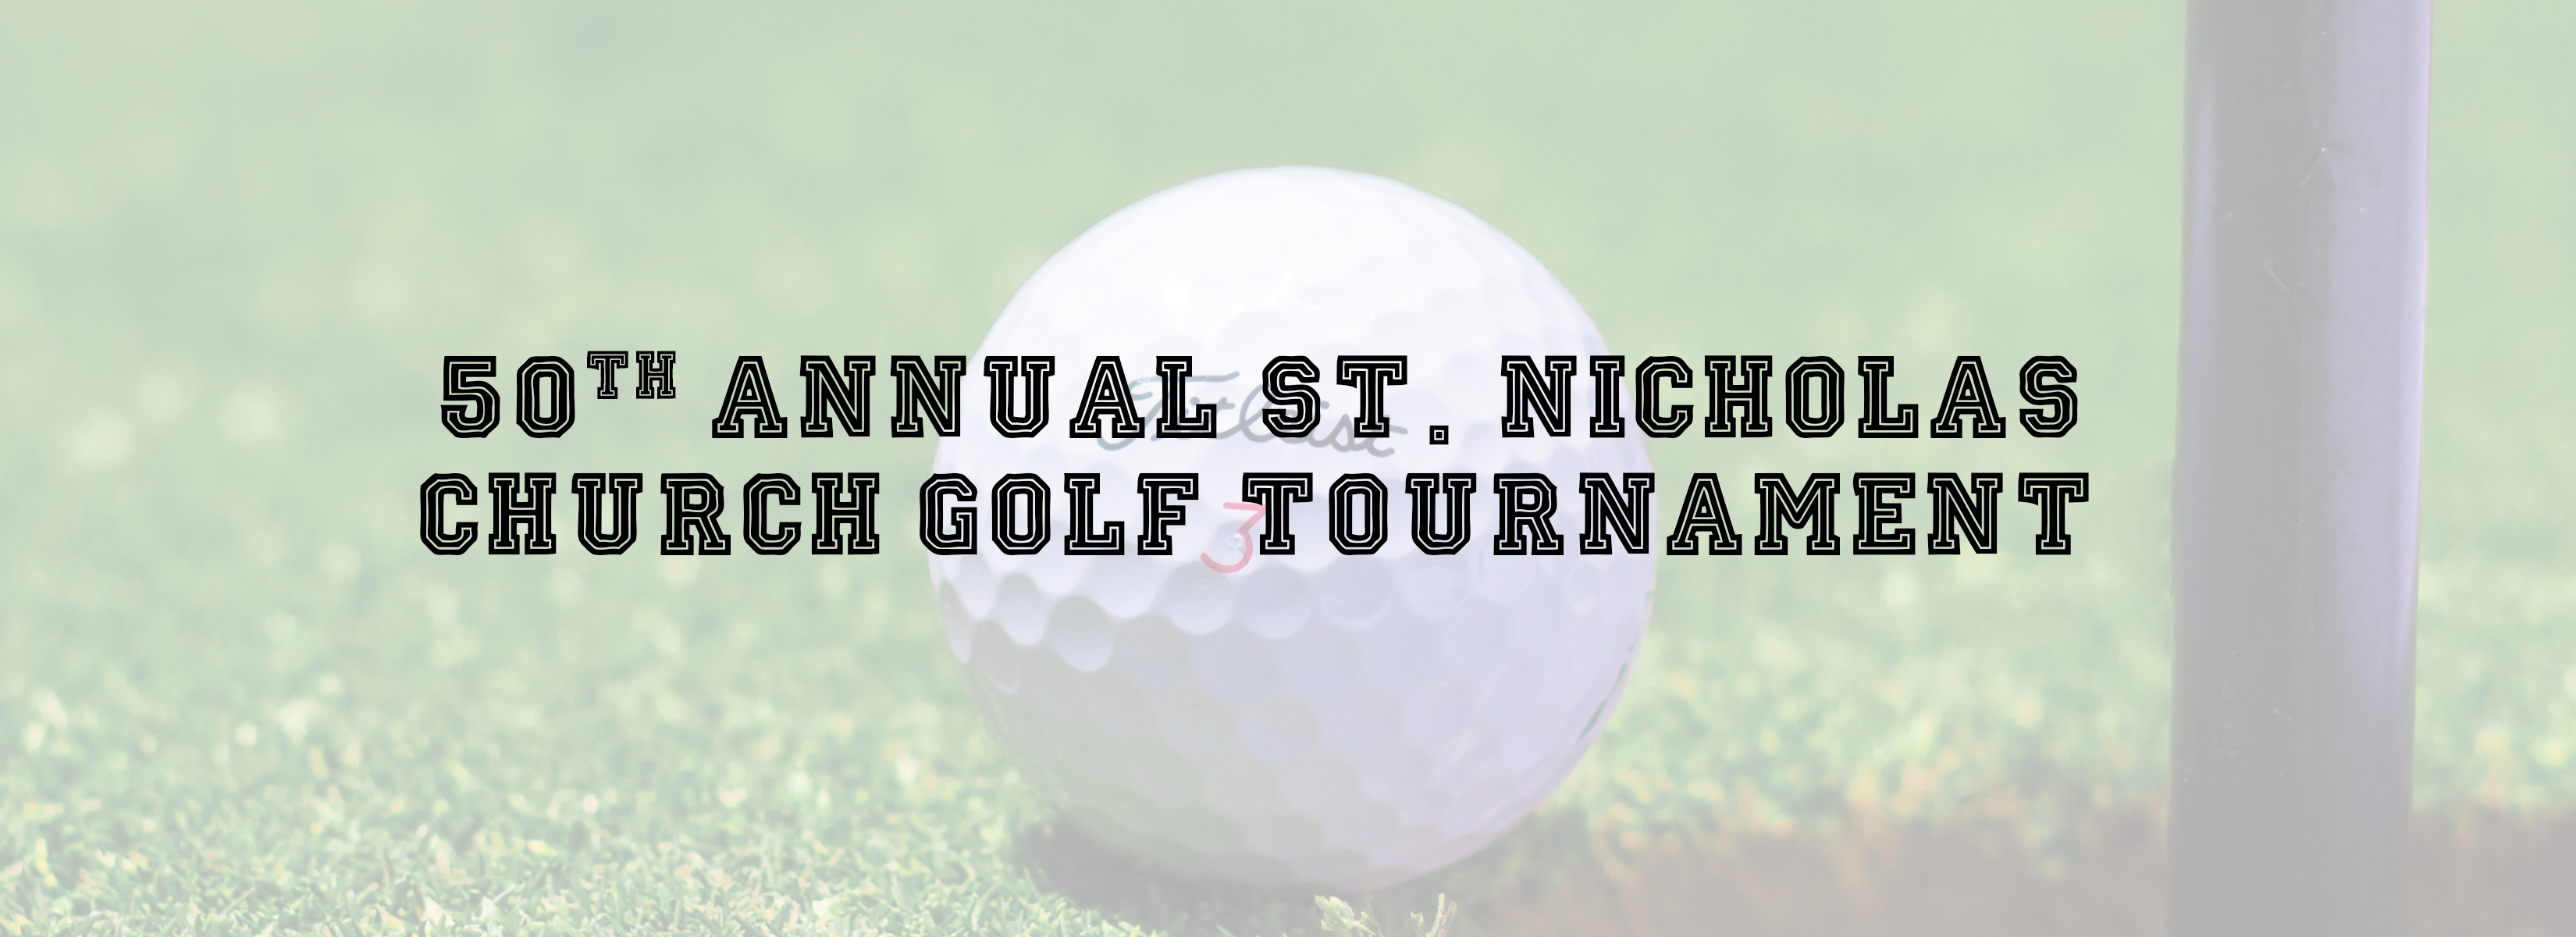 50th Annual St. Nicholas Church Golf Tournament